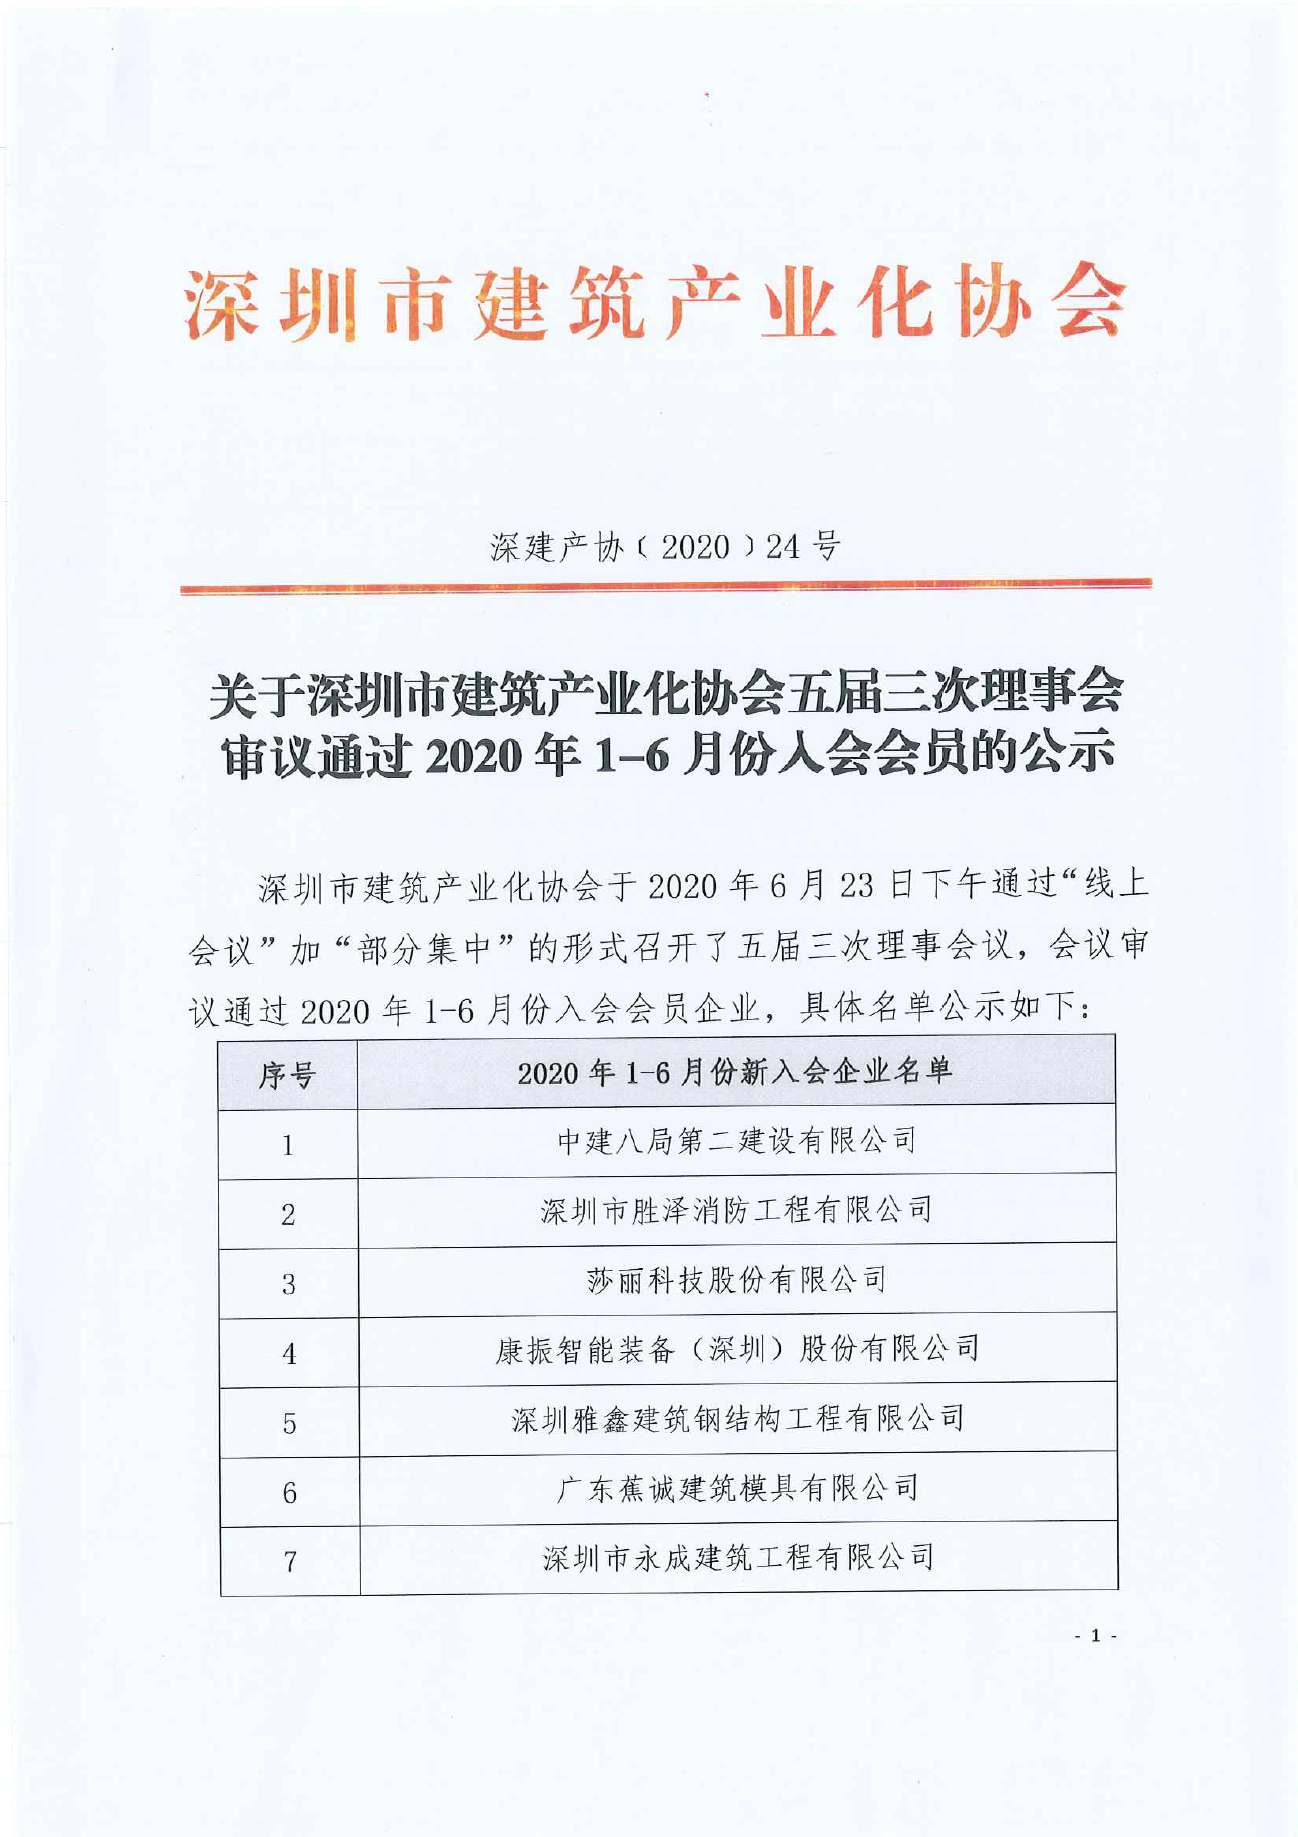 关于深圳市建筑产业化协会五届三次理事会审议通过2020年1-6月份入会会员的公示